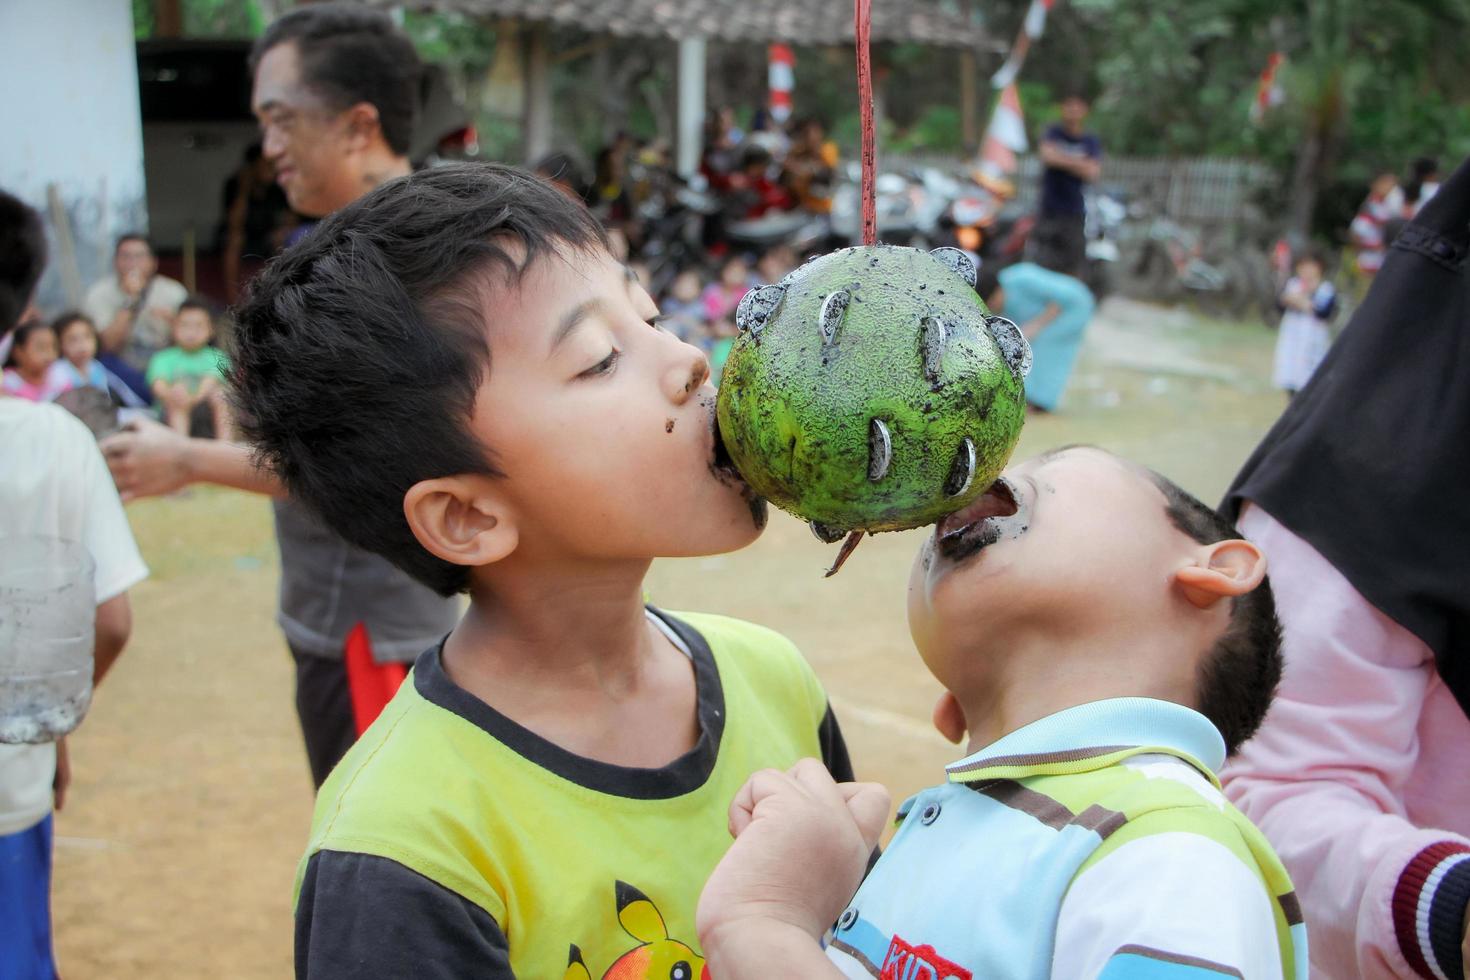 magetan, indonesien. 17. august 2022. indonesische kinder freuen sich, indonesiens unabhängigkeitstag mit der teilnahme an einem wettbewerb zu feiern. foto